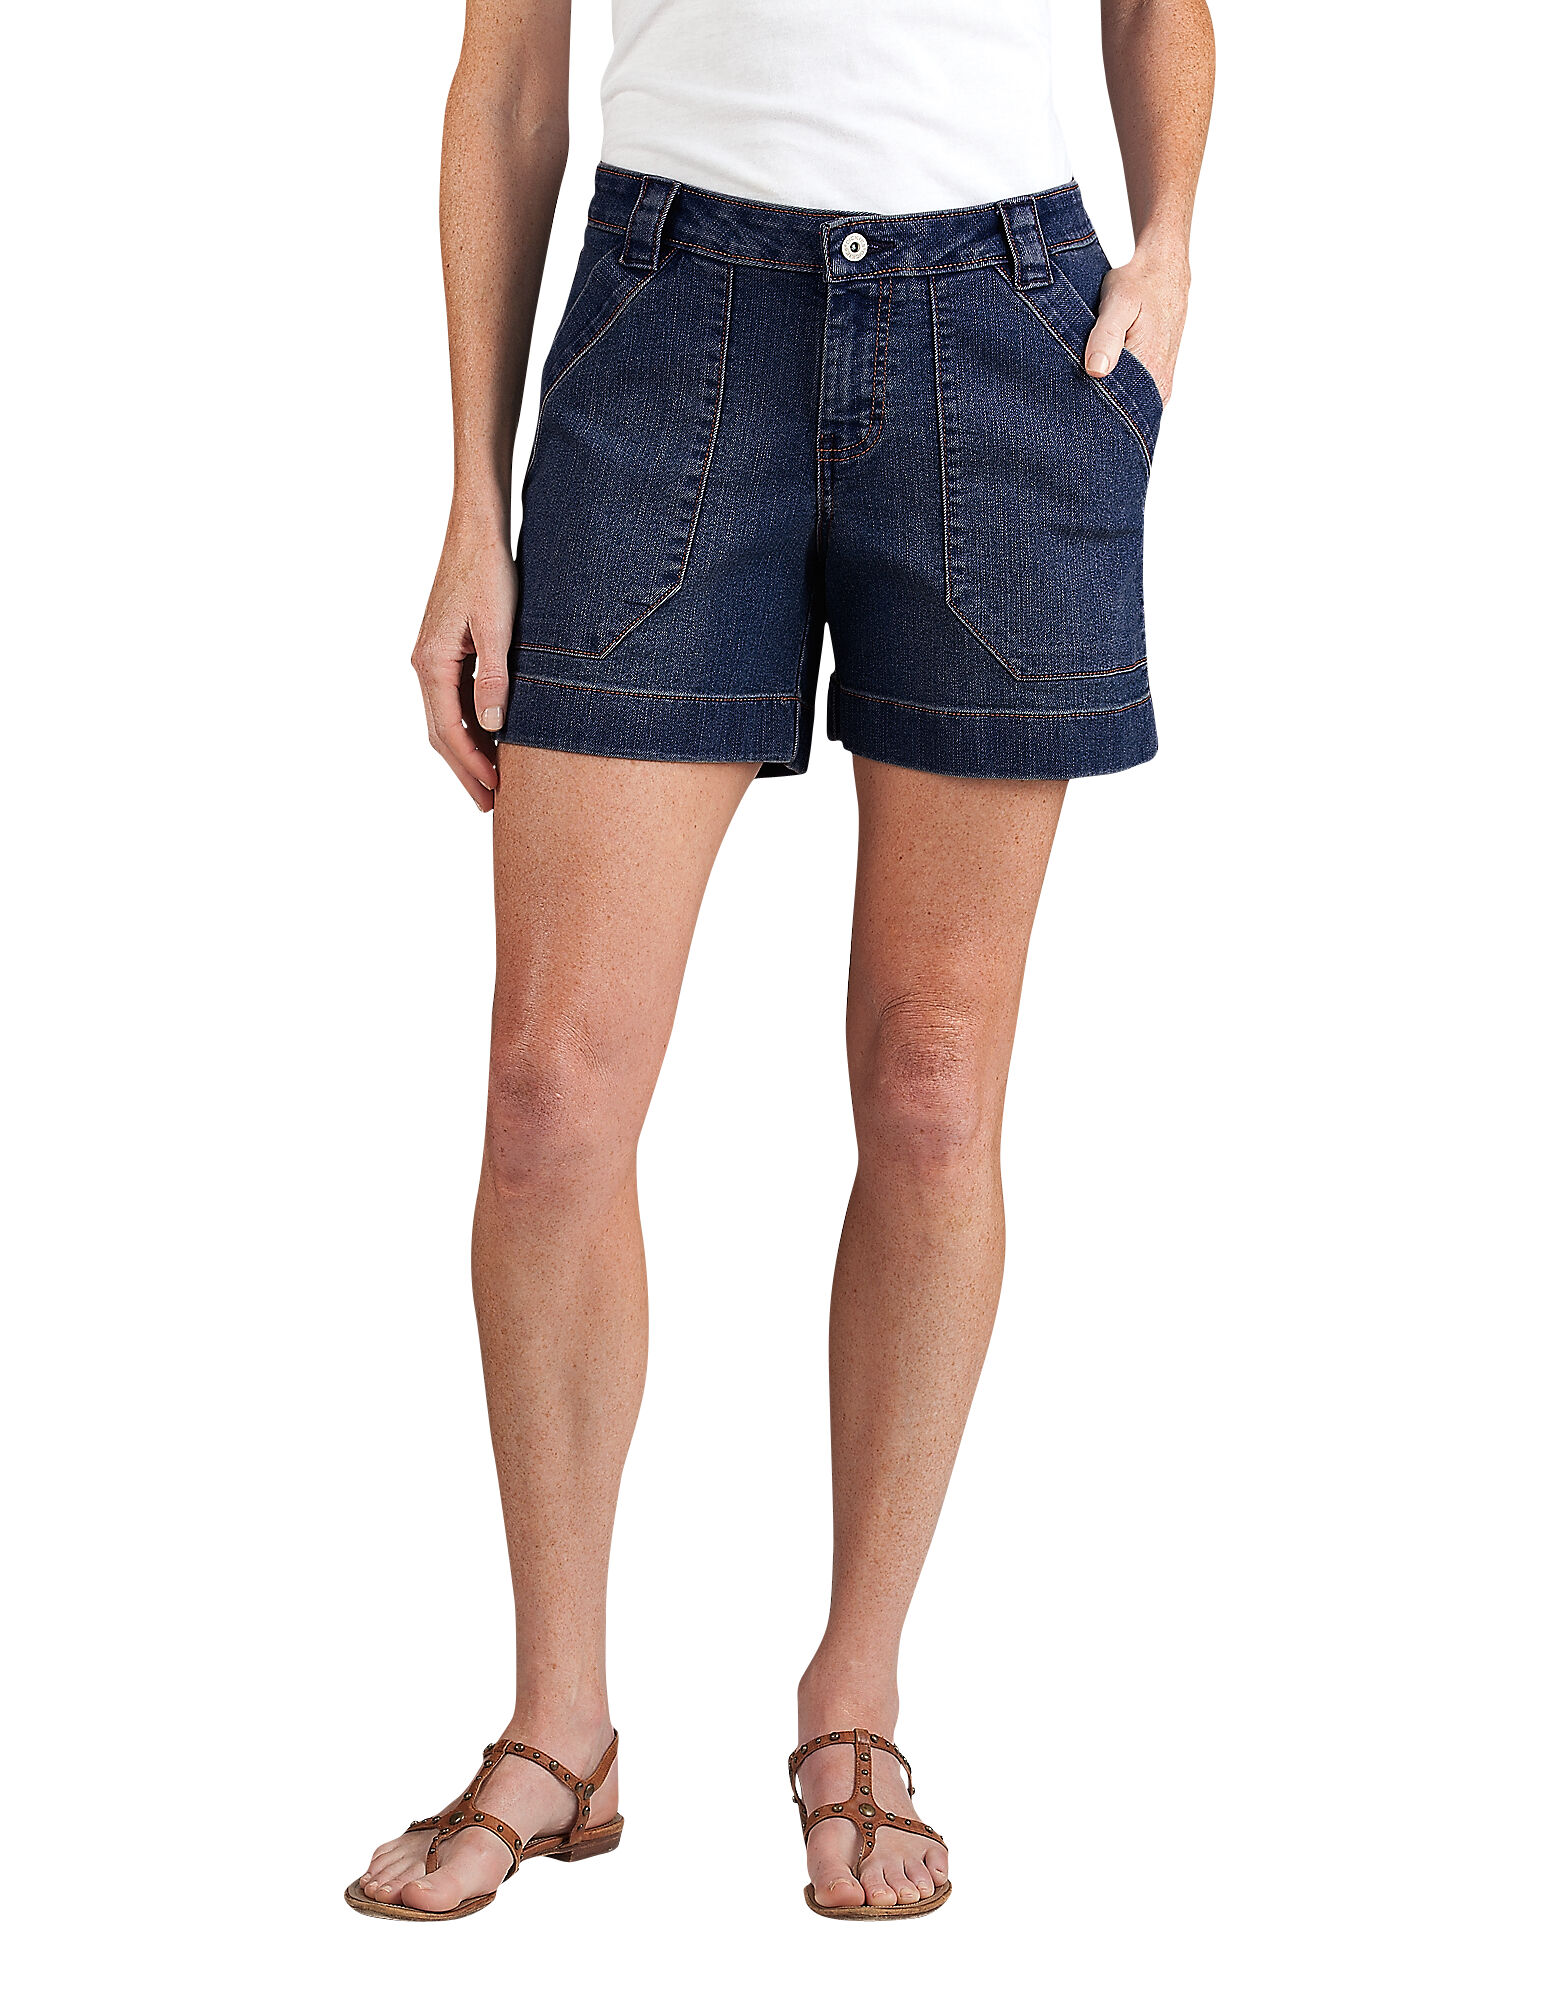 blue denim shorts womens